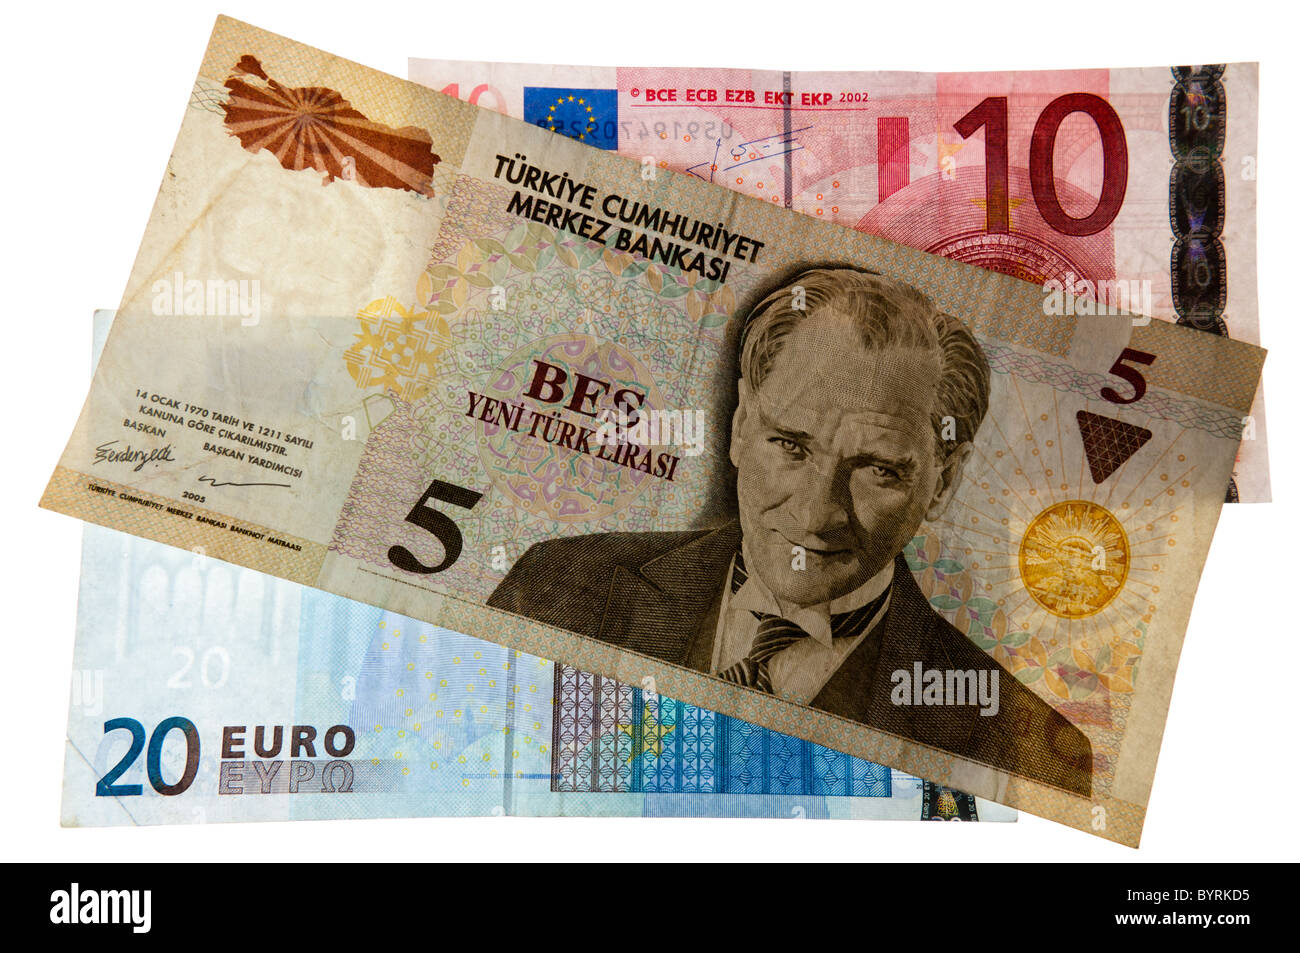 Lira ed euro immagini e fotografie stock ad alta risoluzione - Alamy